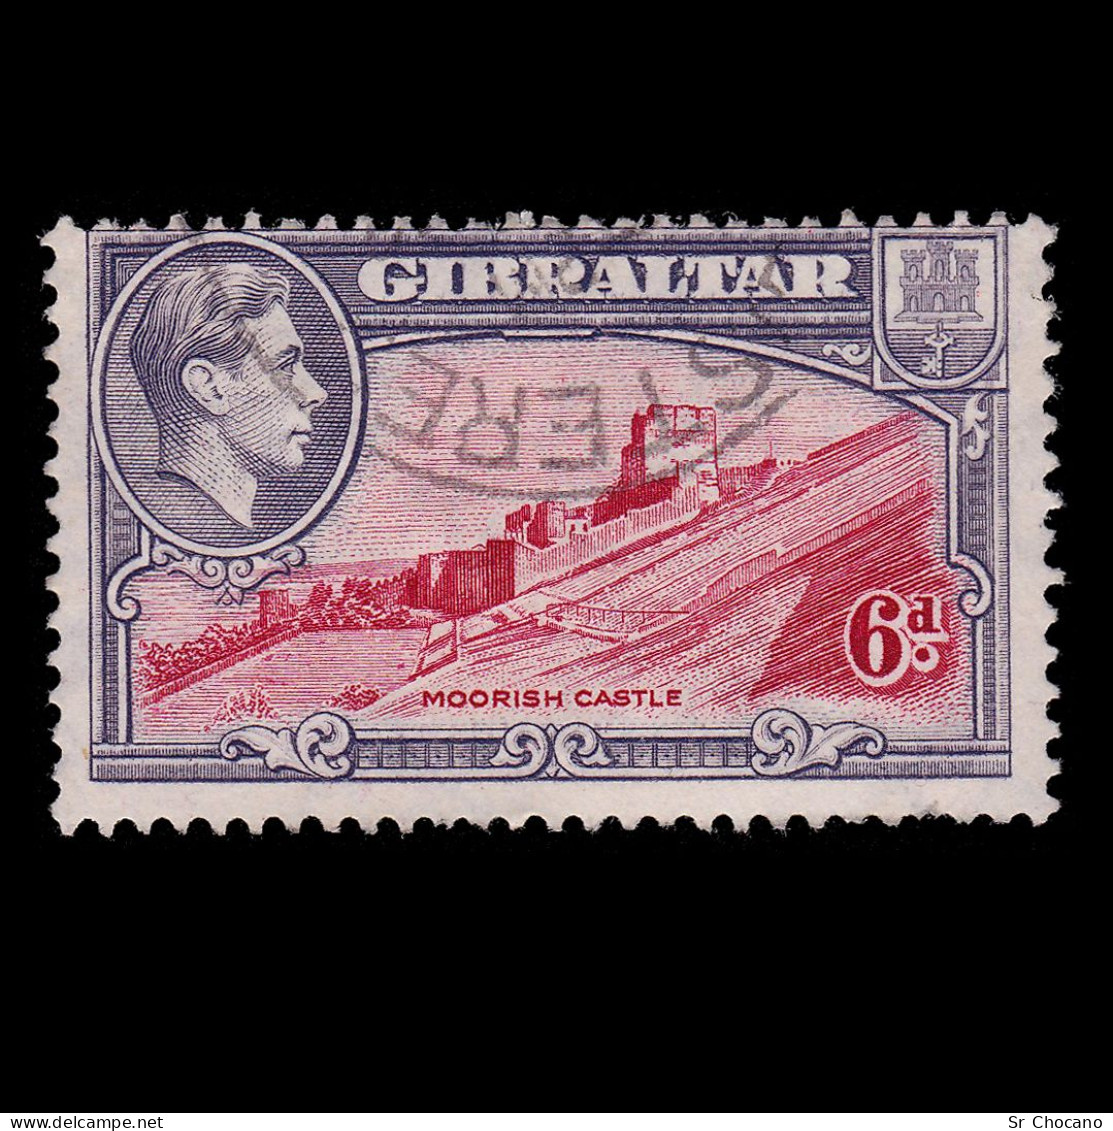 GIBRALTAR.1945.GVI.6d.SG 126C.USED.Perf 13 - Gibraltar